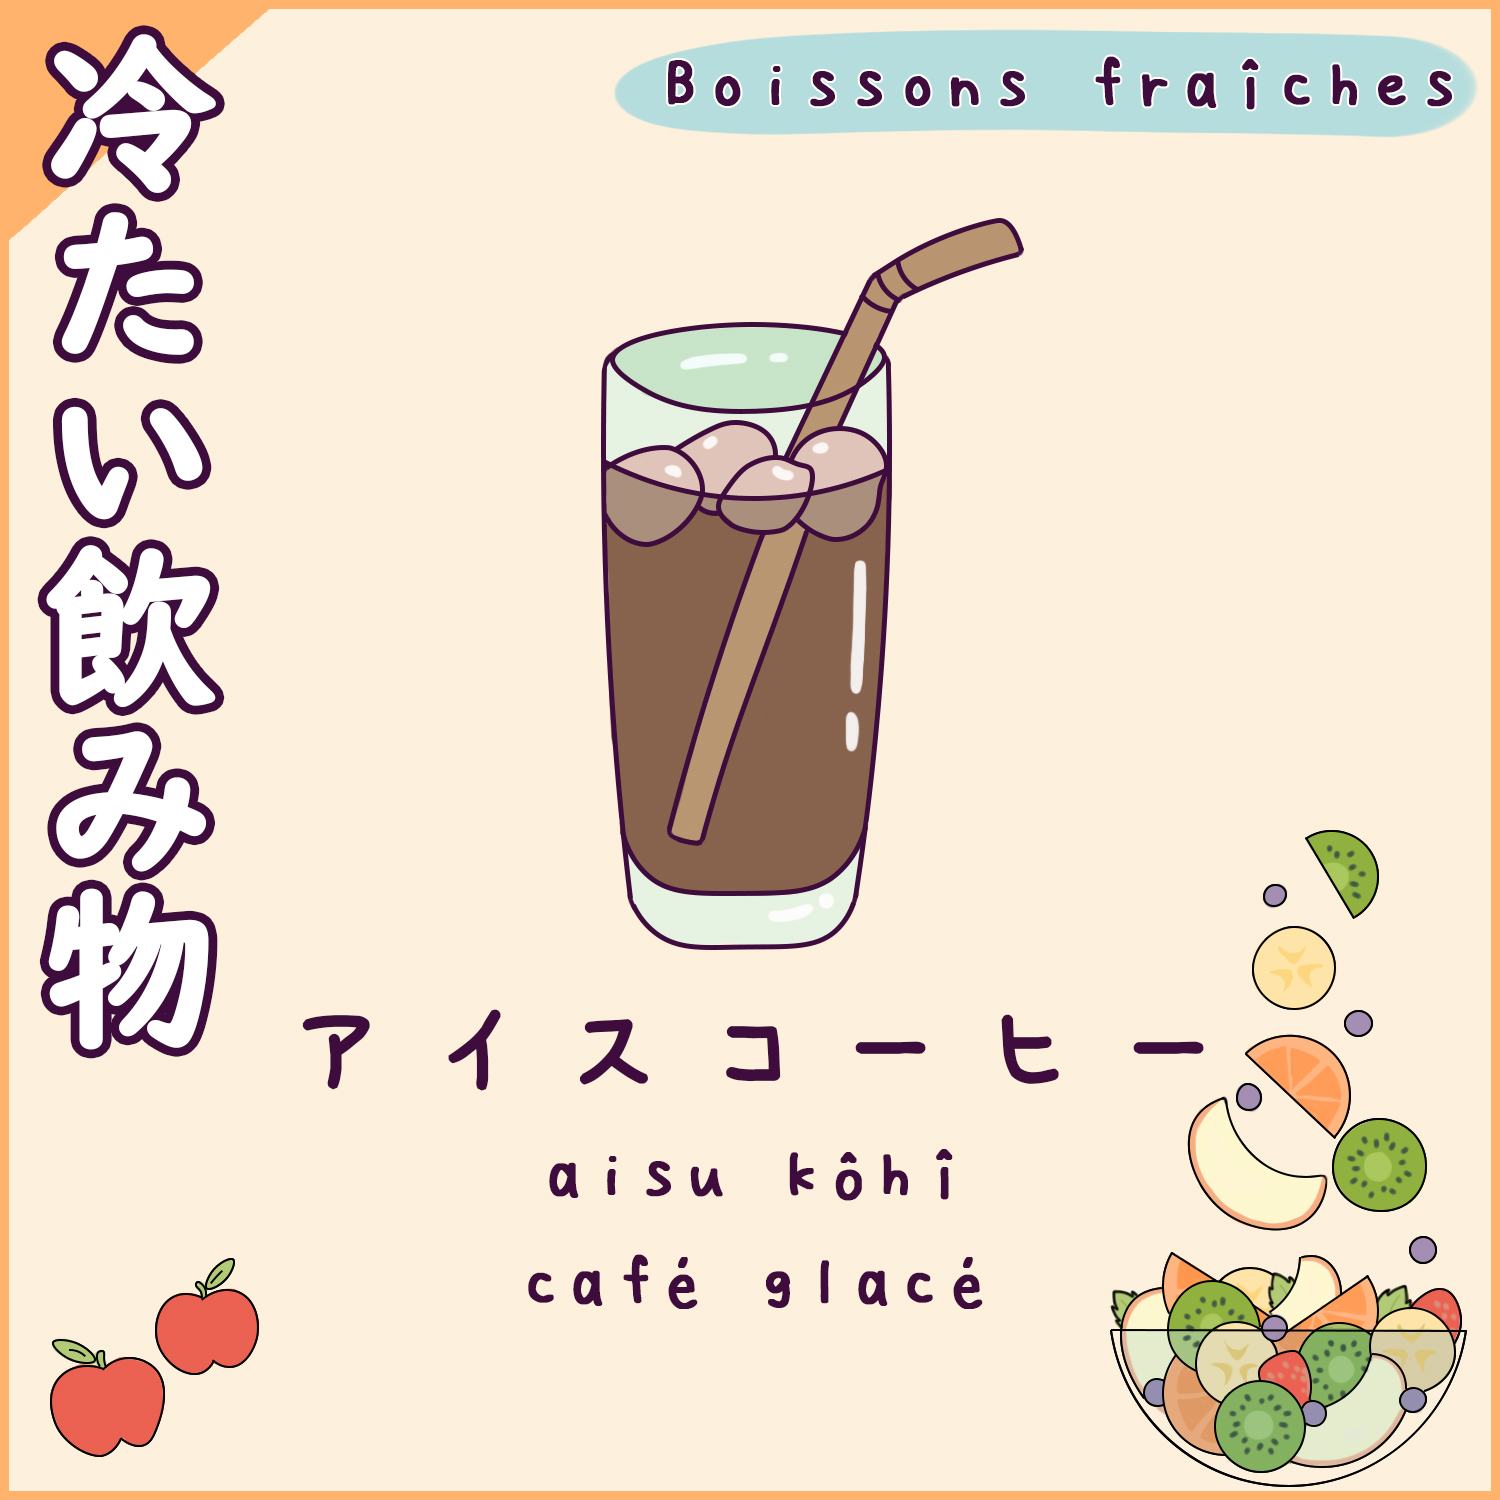 Boissons en japonais (fraîches) - café froid